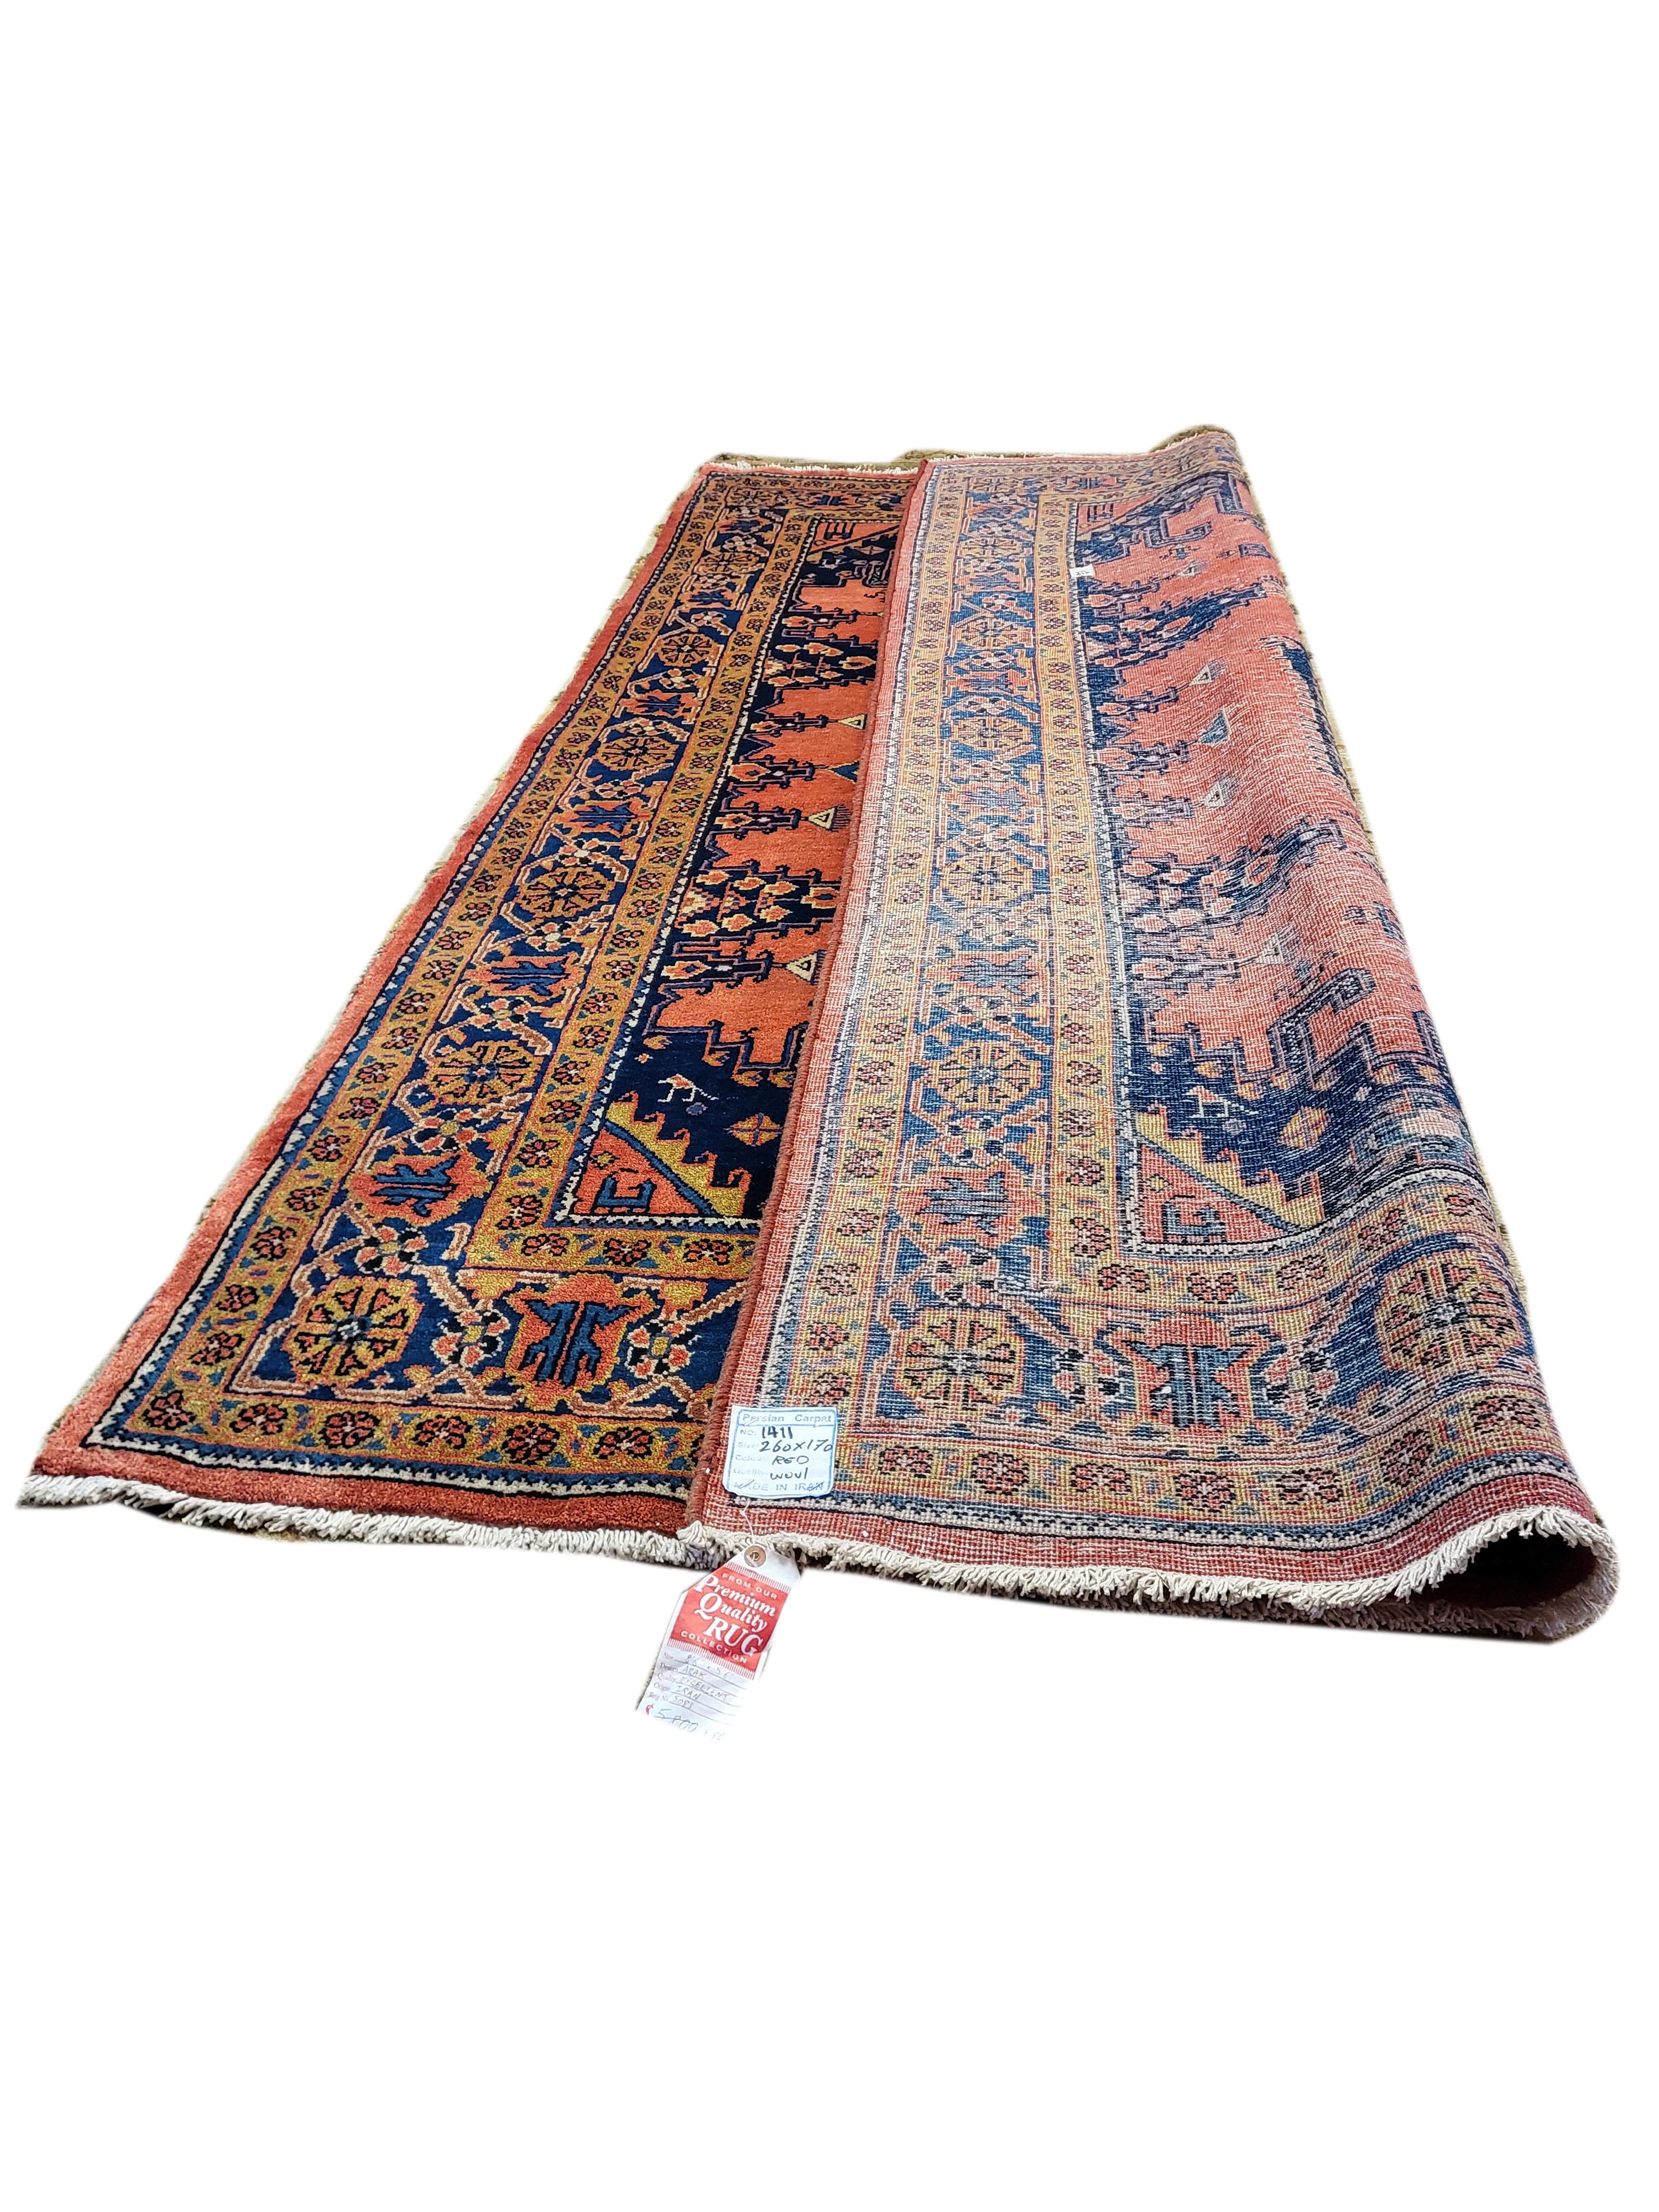 Antiker Wis / Arak - Persischer Teppich 5,5'x8,5' in Lachs, Marineblau, Gold (Handgeknüpft) im Angebot